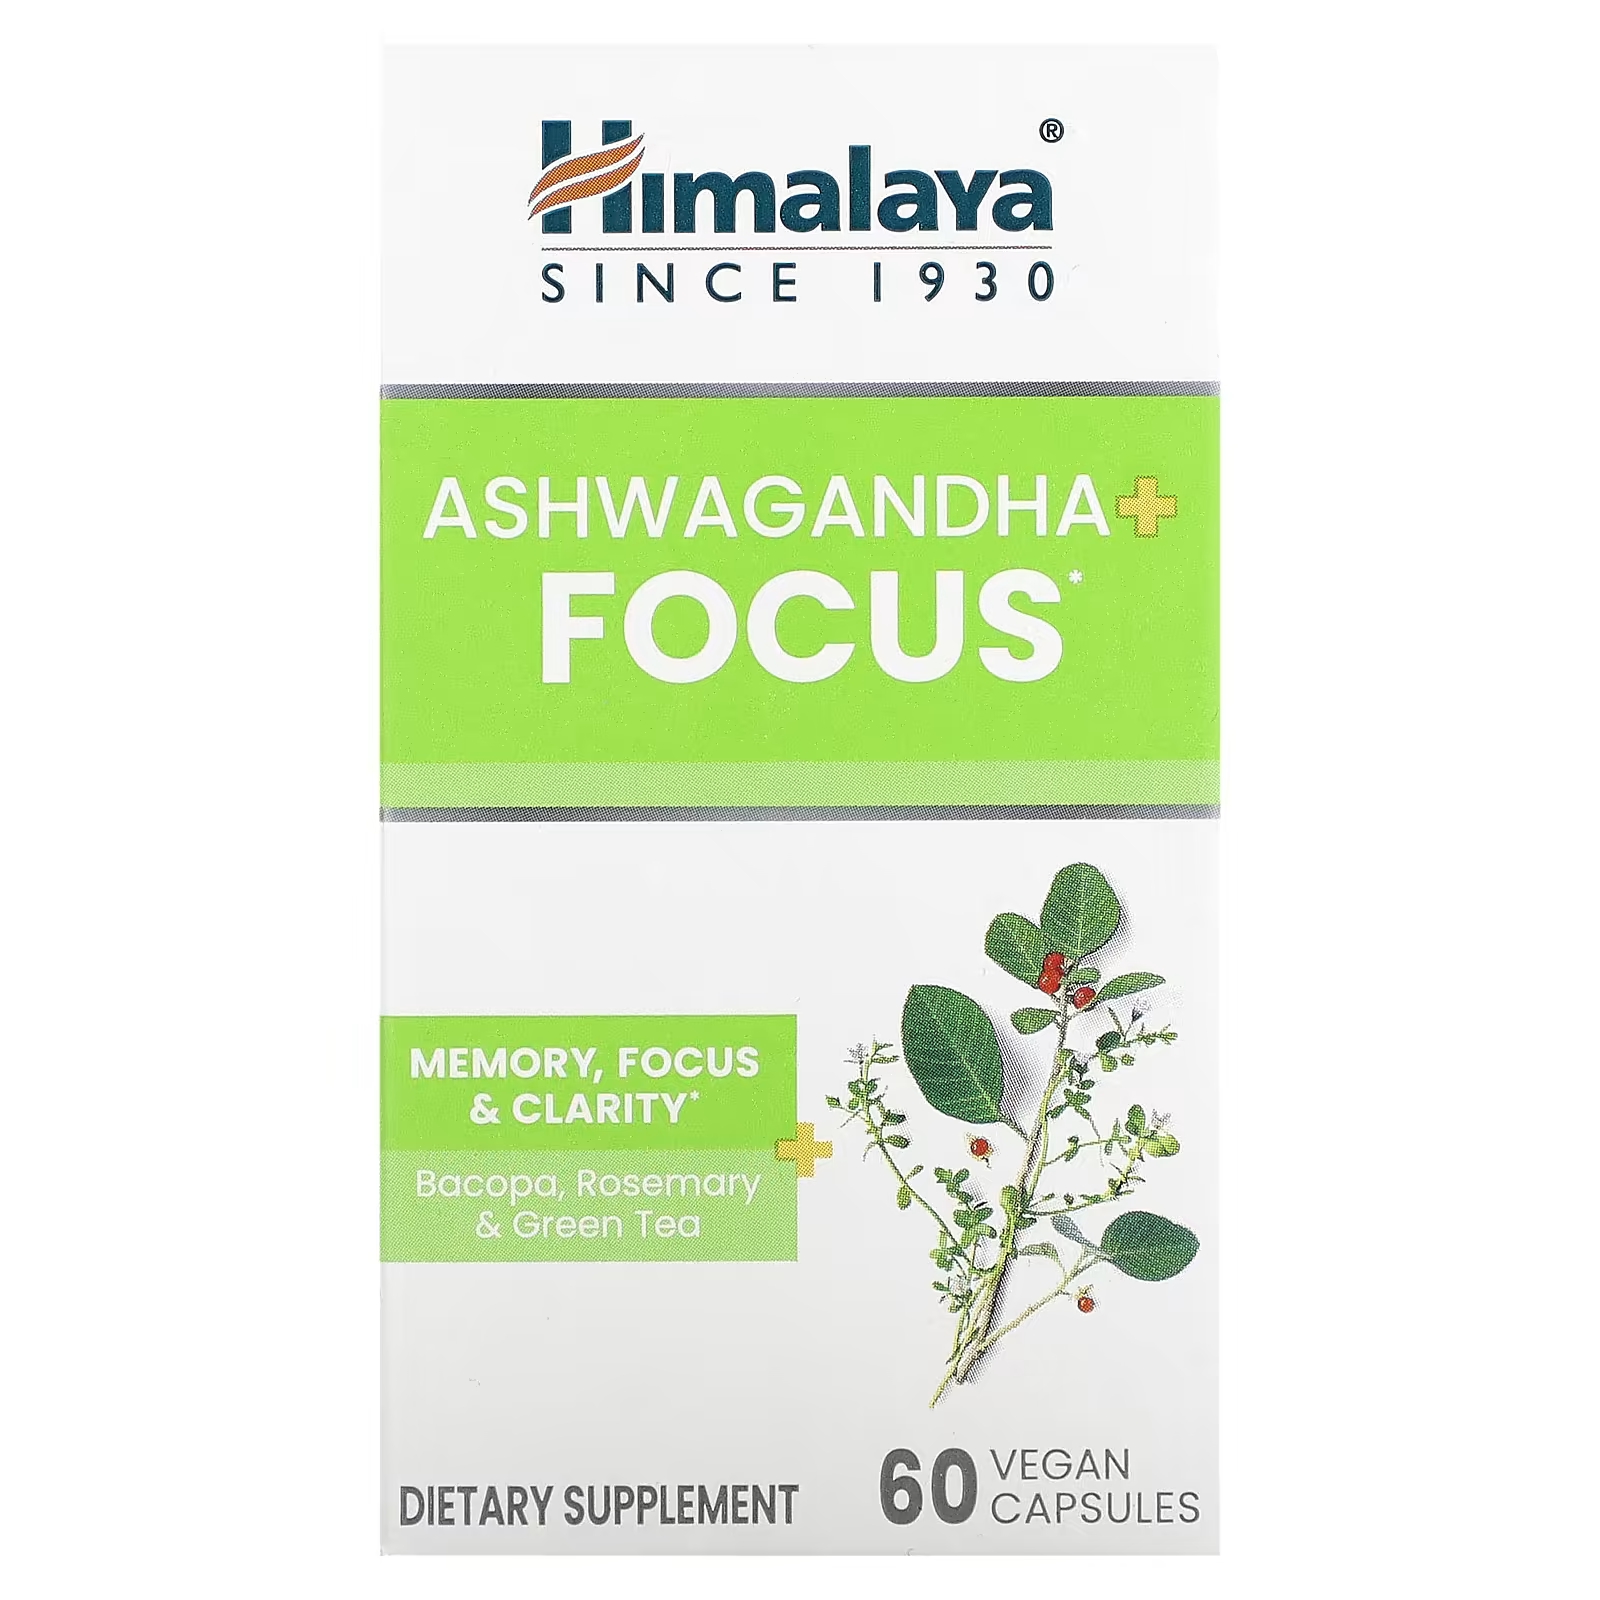 Пищевая добавка с ашвагандой Himalaya Ashwagandha + Focus, 60 капсул himalaya hello joy поддержка настроения с ашвагандой 60 вегетарианских капсул